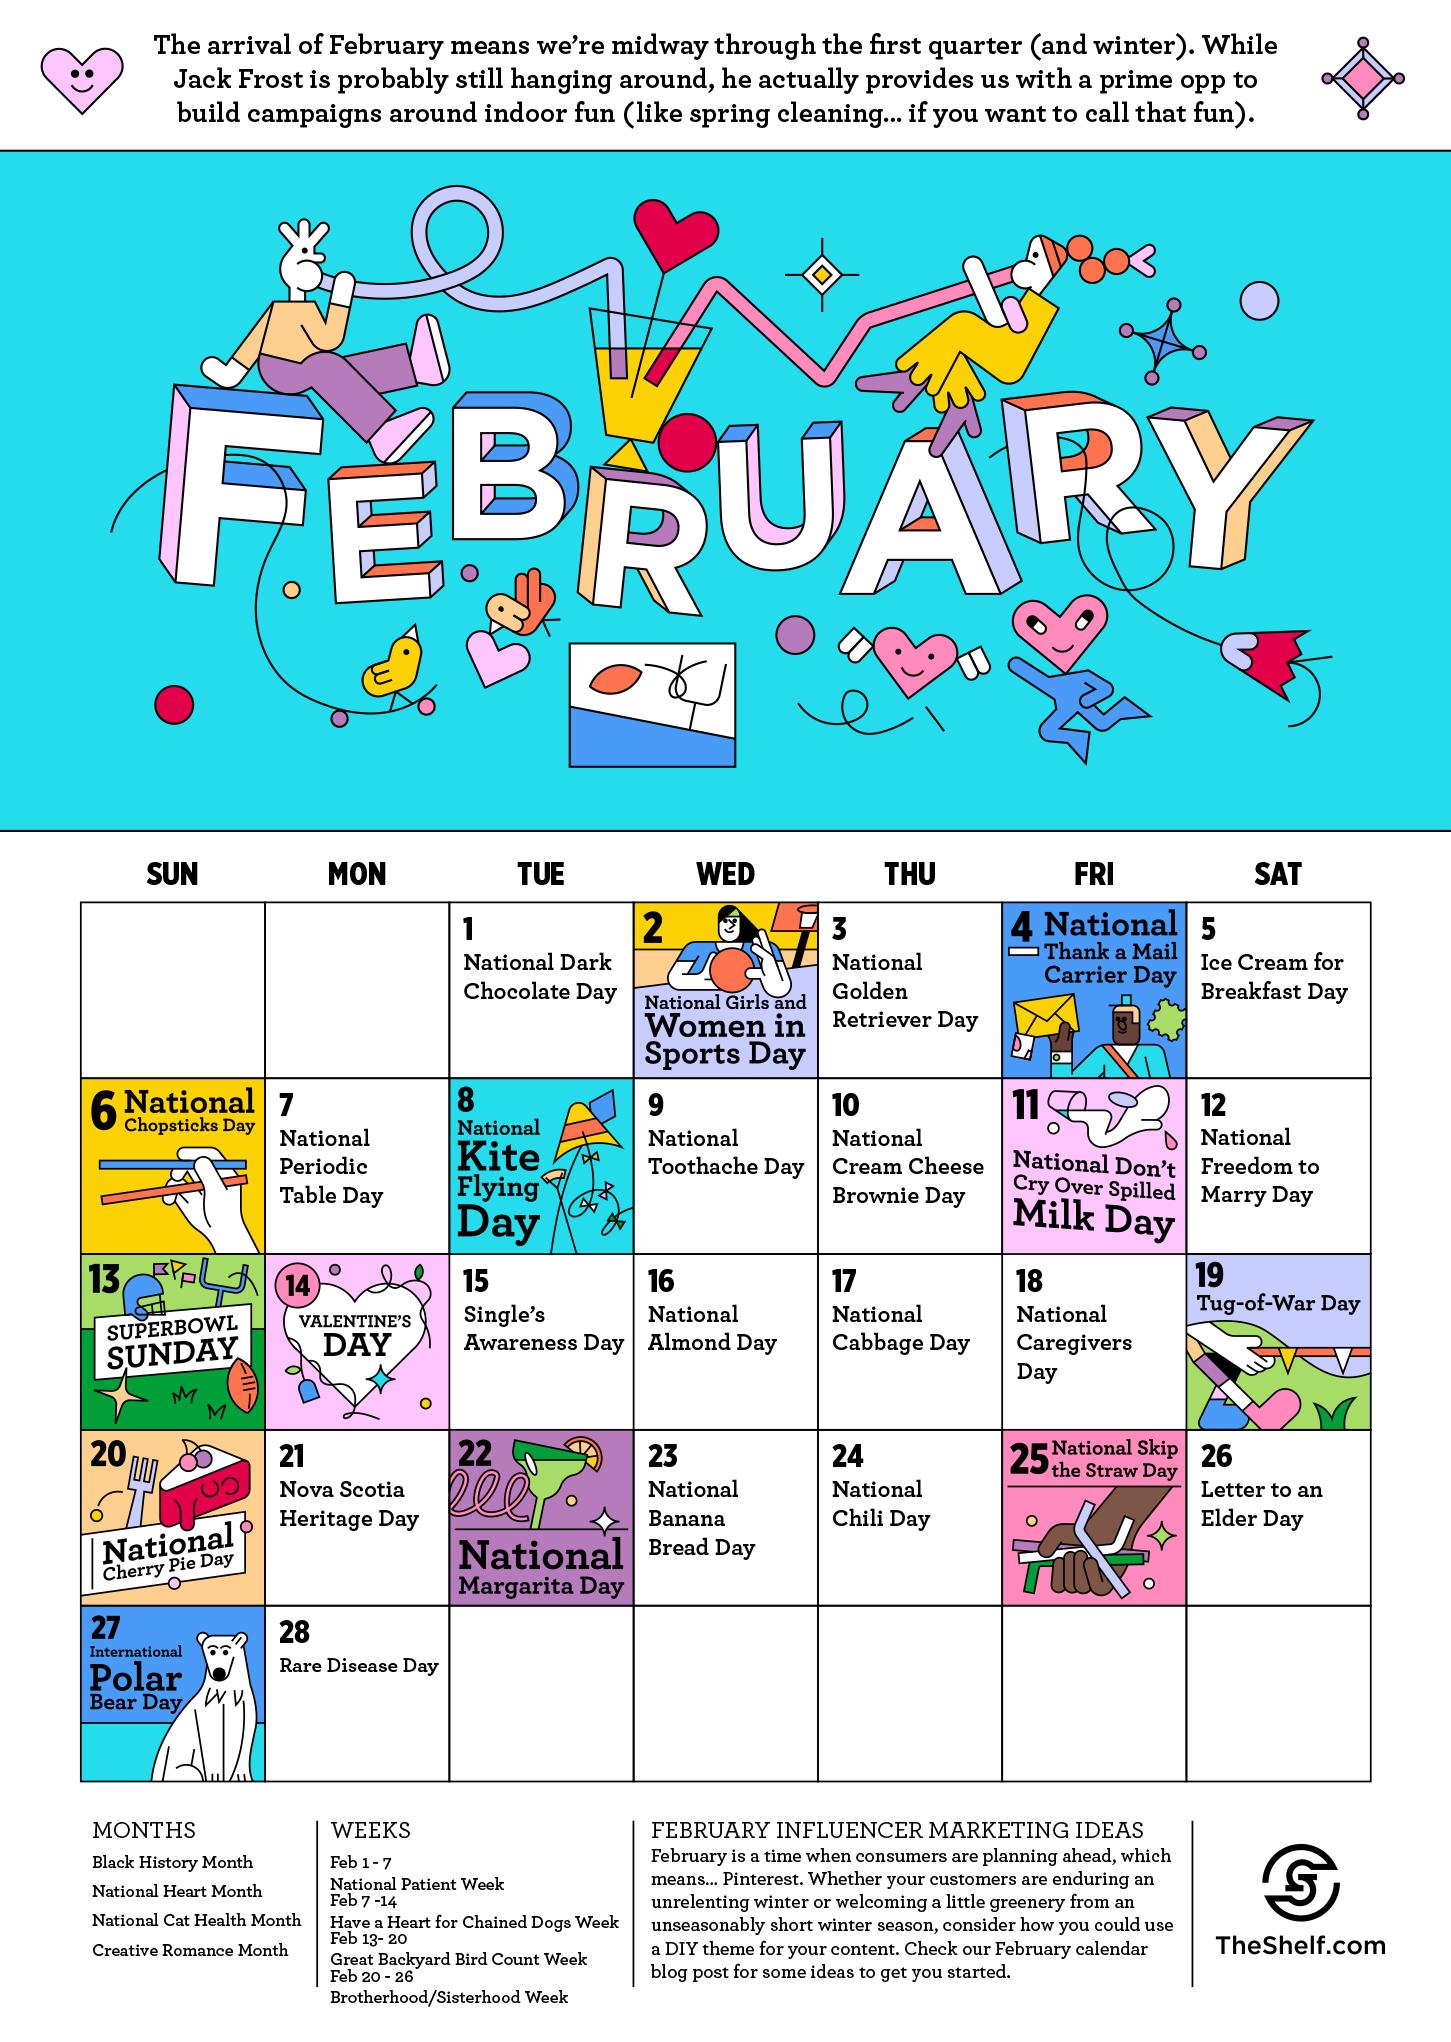 Media Calendar 2022 February 2022 Social Media Calendar • The Shelf Influencer Marketing